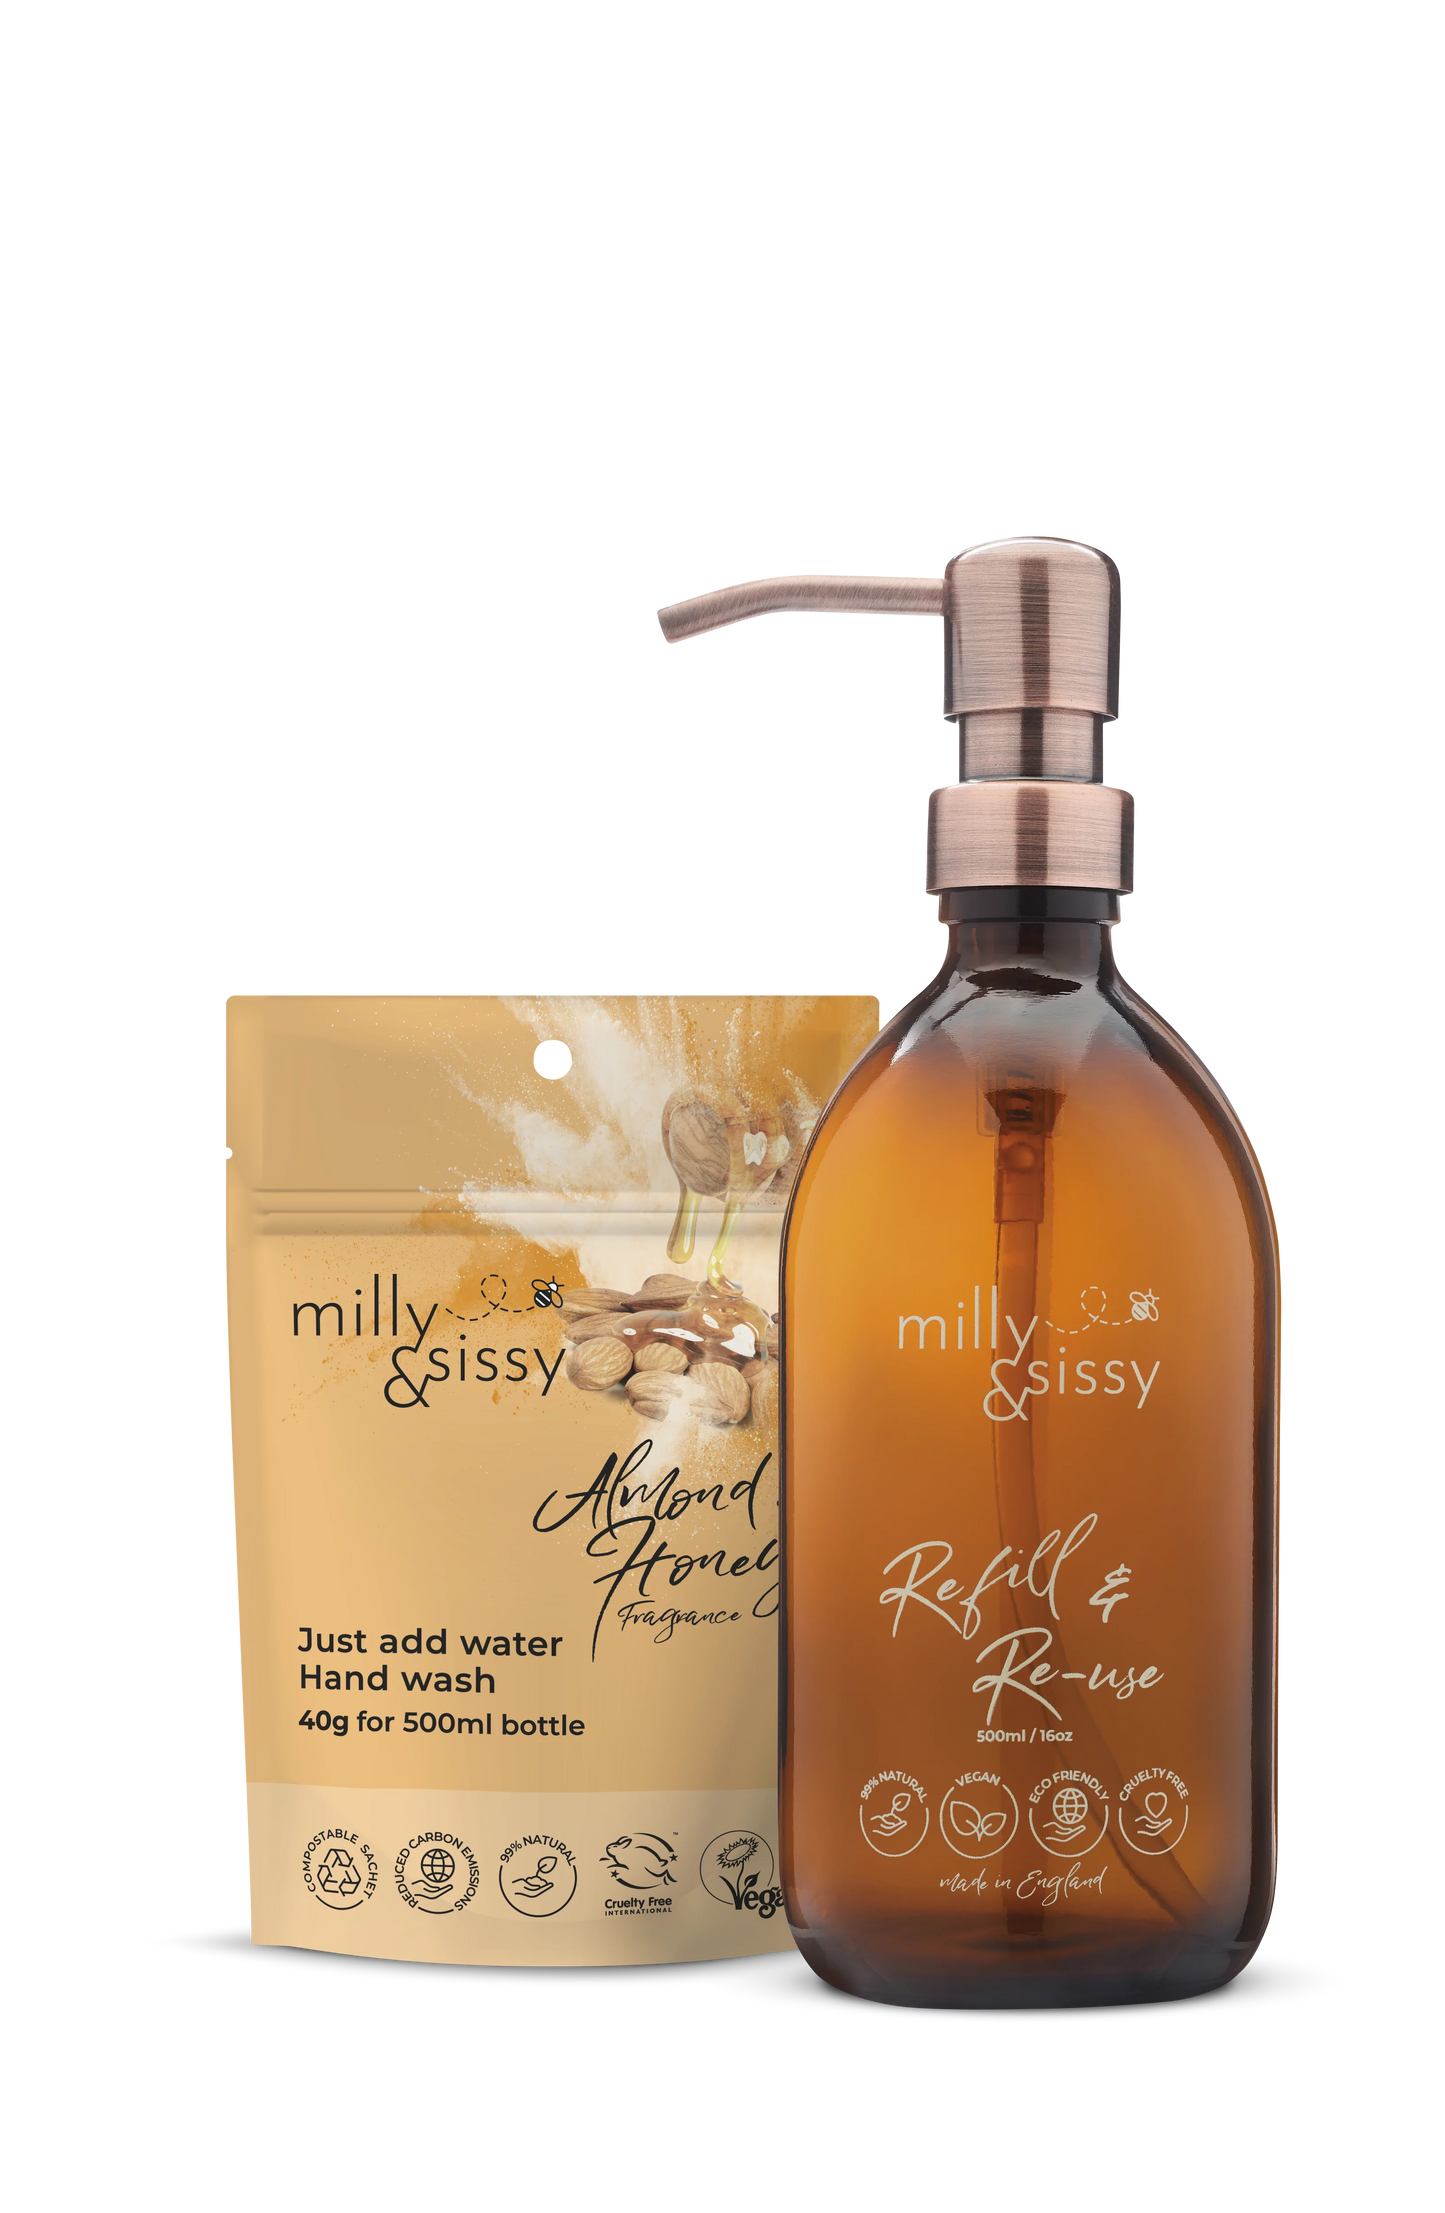 Milly & Sissy - Almond & Honey Hand Wash Gift Set